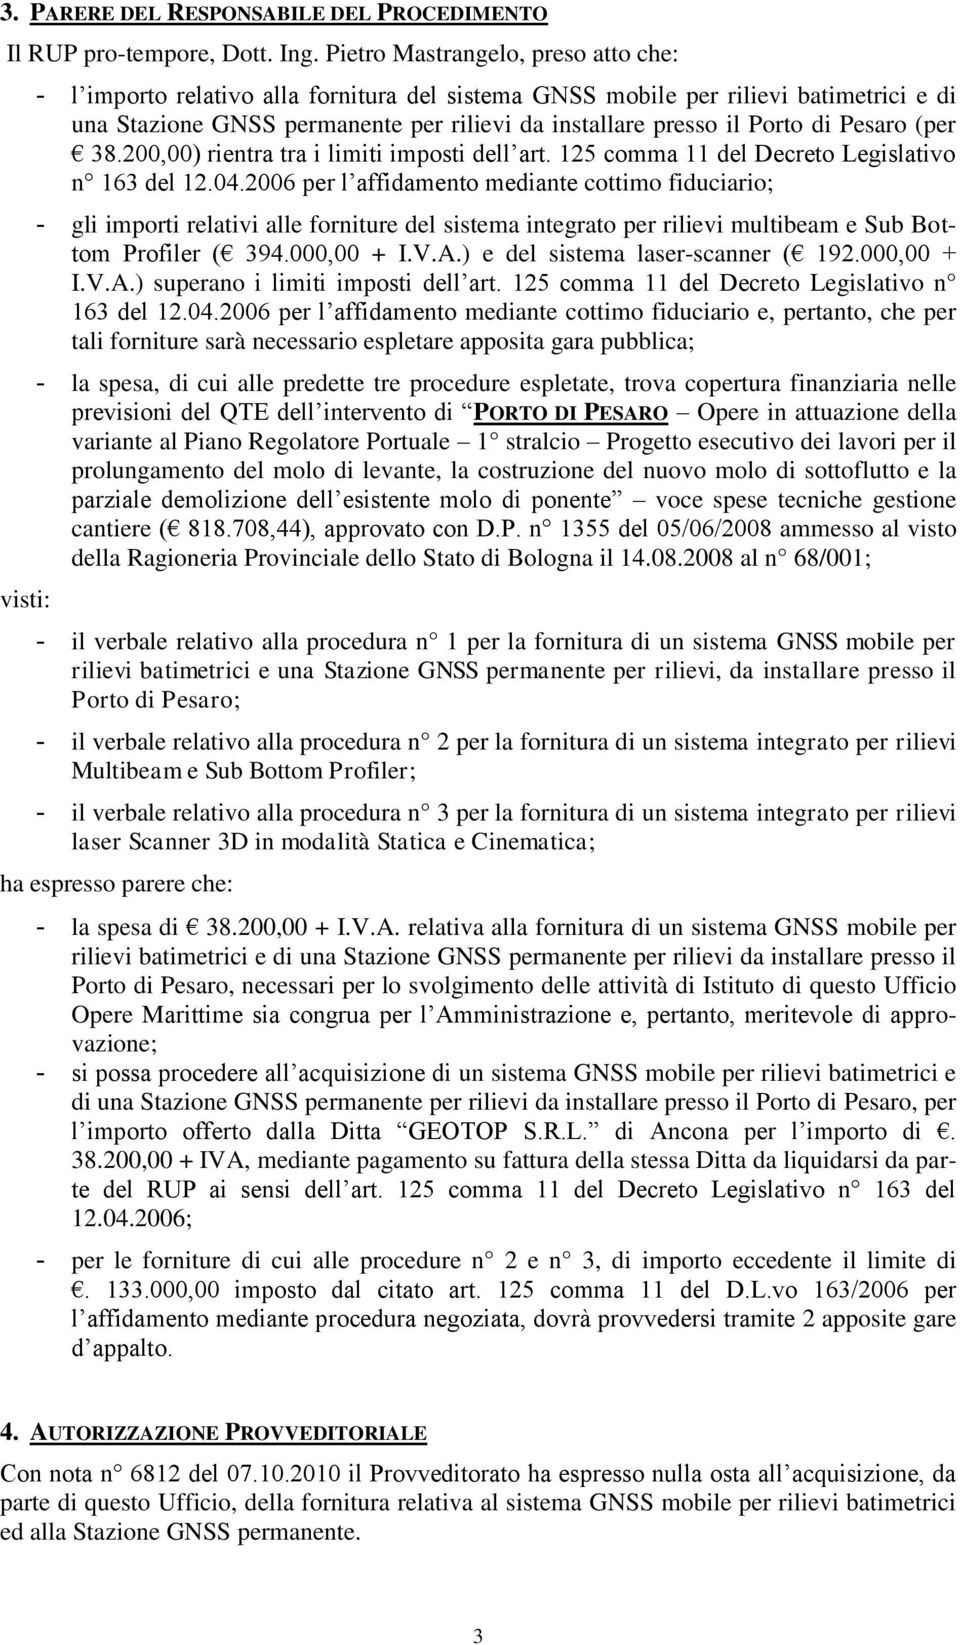 Porto di Pesaro (per 38.200,00) rientra tra i limiti imposti dell art. 125 comma 11 del Decreto Legislativo n 163 del 12.04.